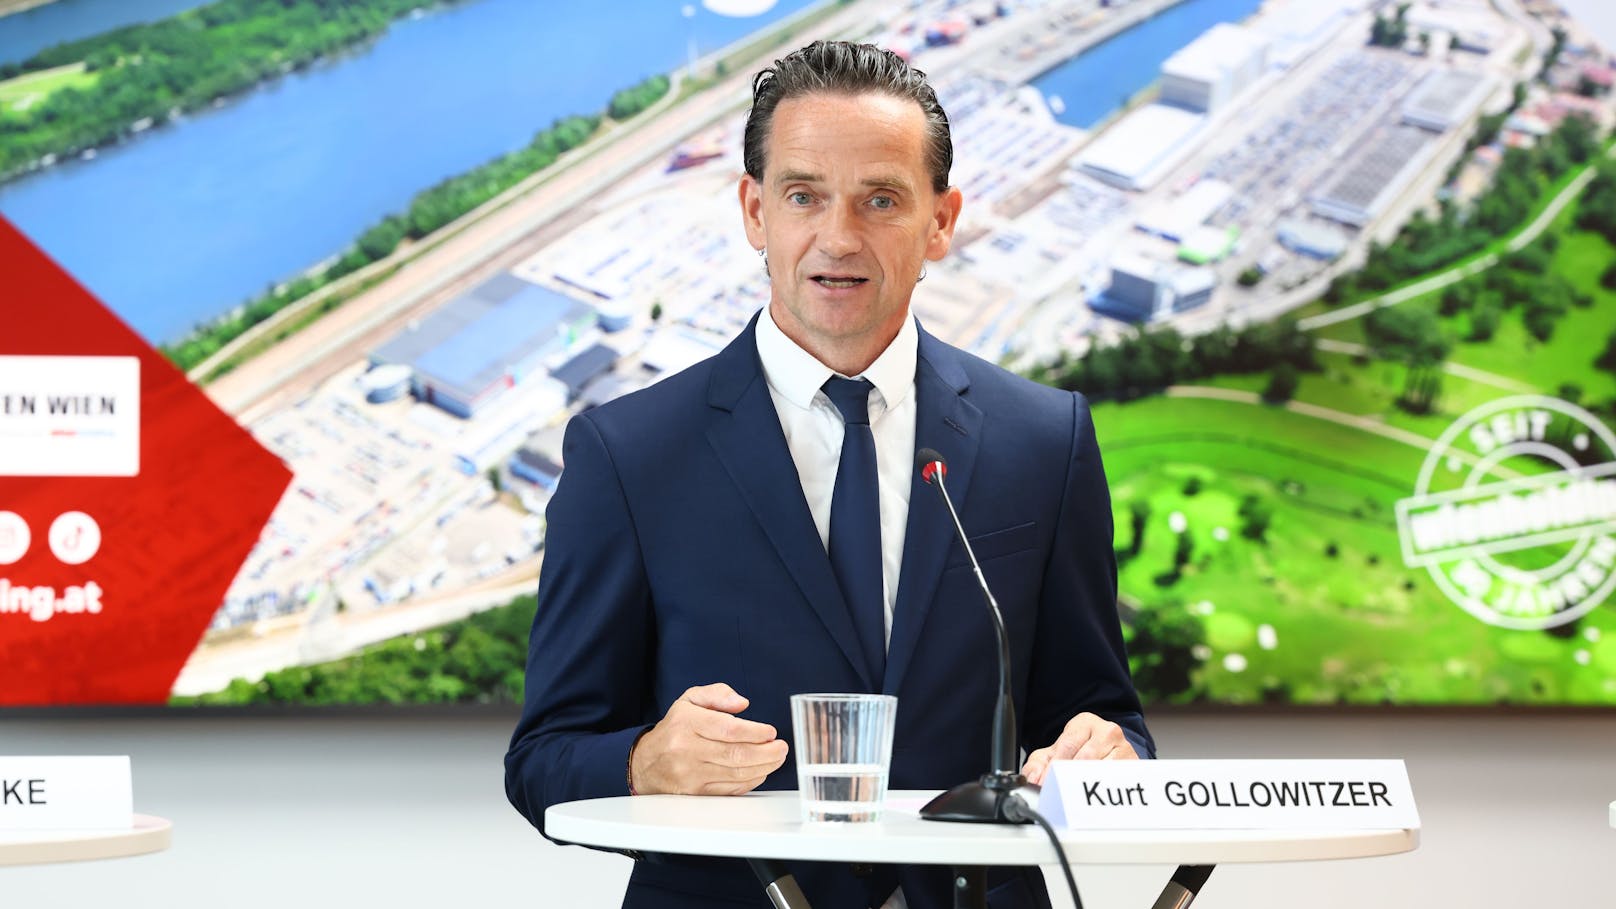 Wien Holding-Geschäftsführer Kurt Gollowitzer